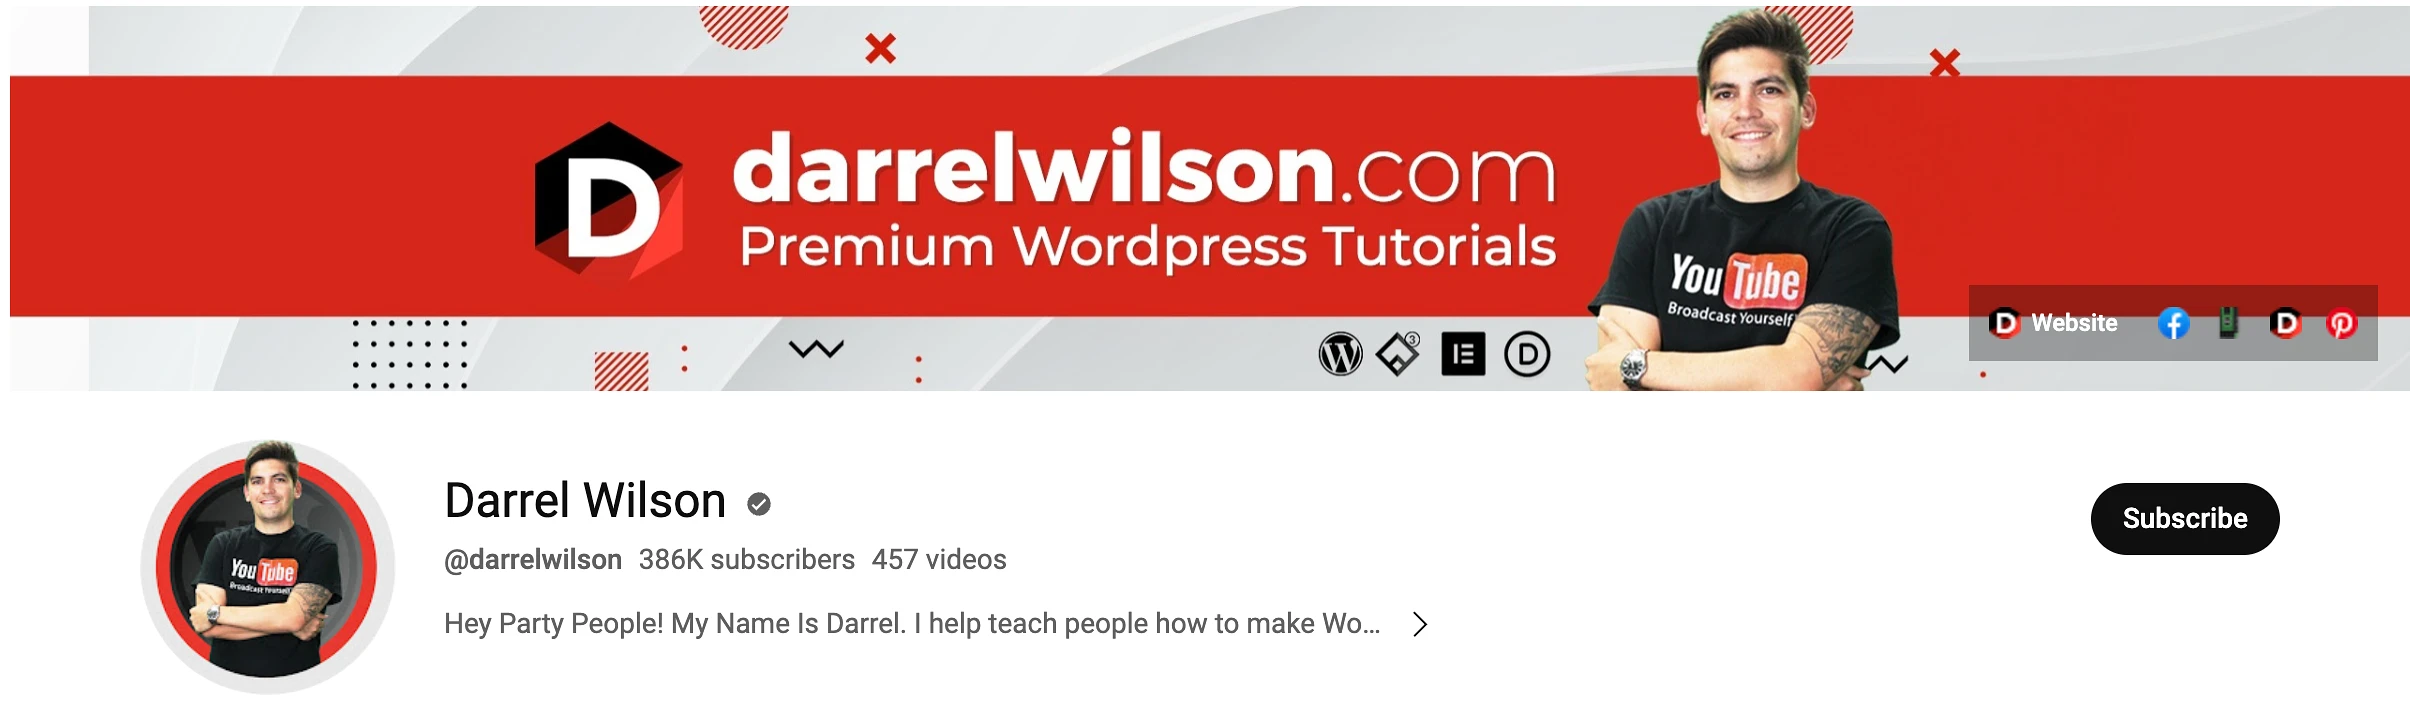 Darrel Wilson - Best Youtube Channels for Learning WordPress